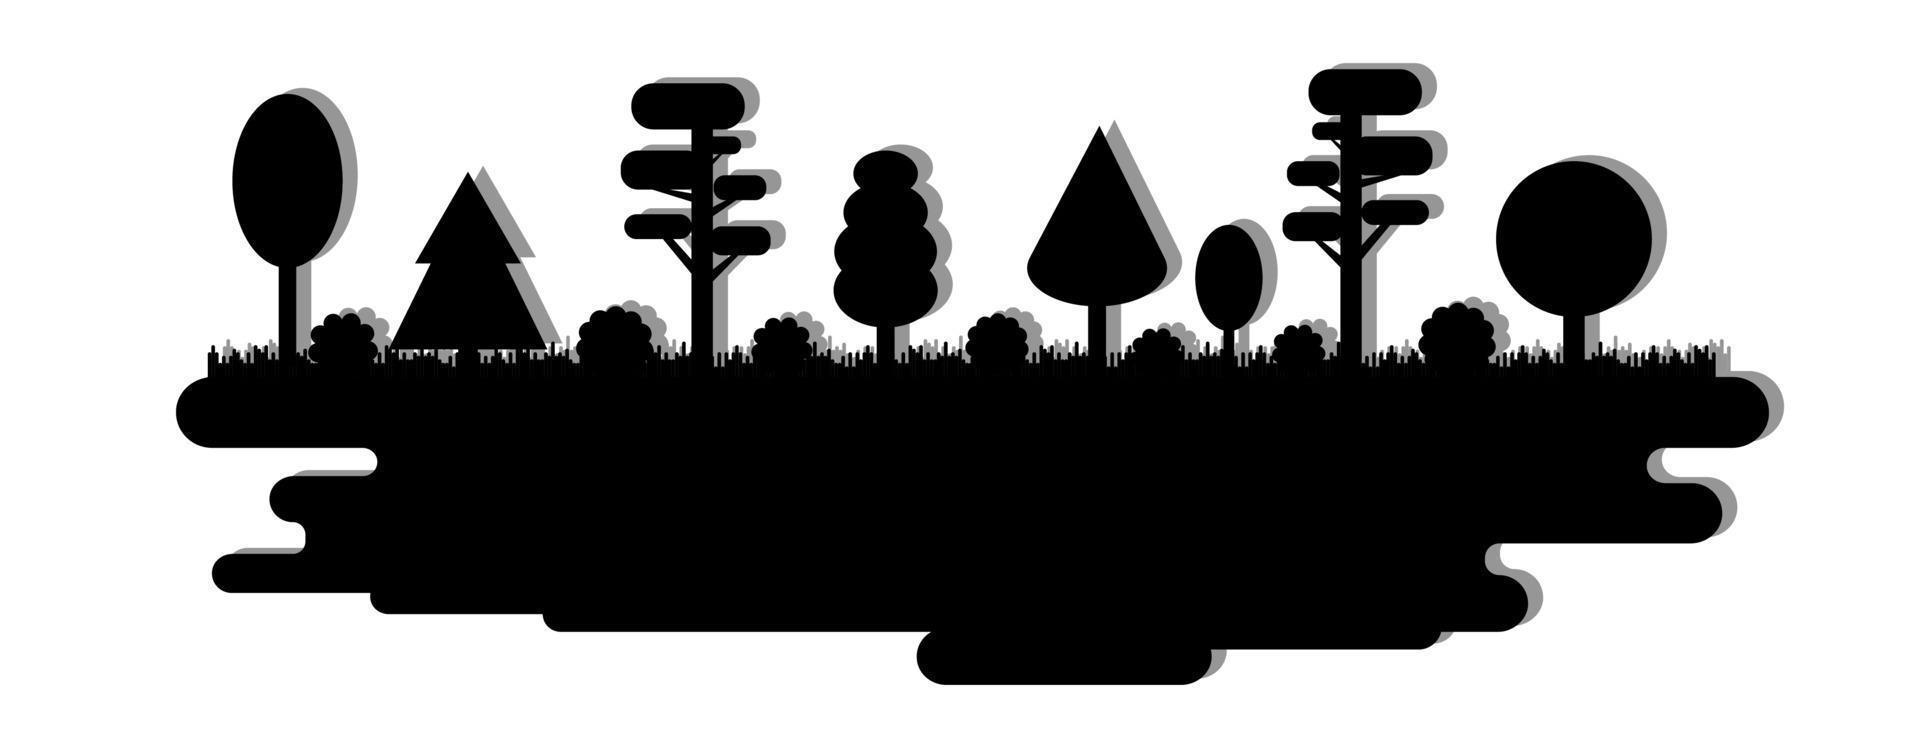 skog, park, gränd med olika träd. svart siluett panorama. vektor illustration isolerad på vit bakgrund.